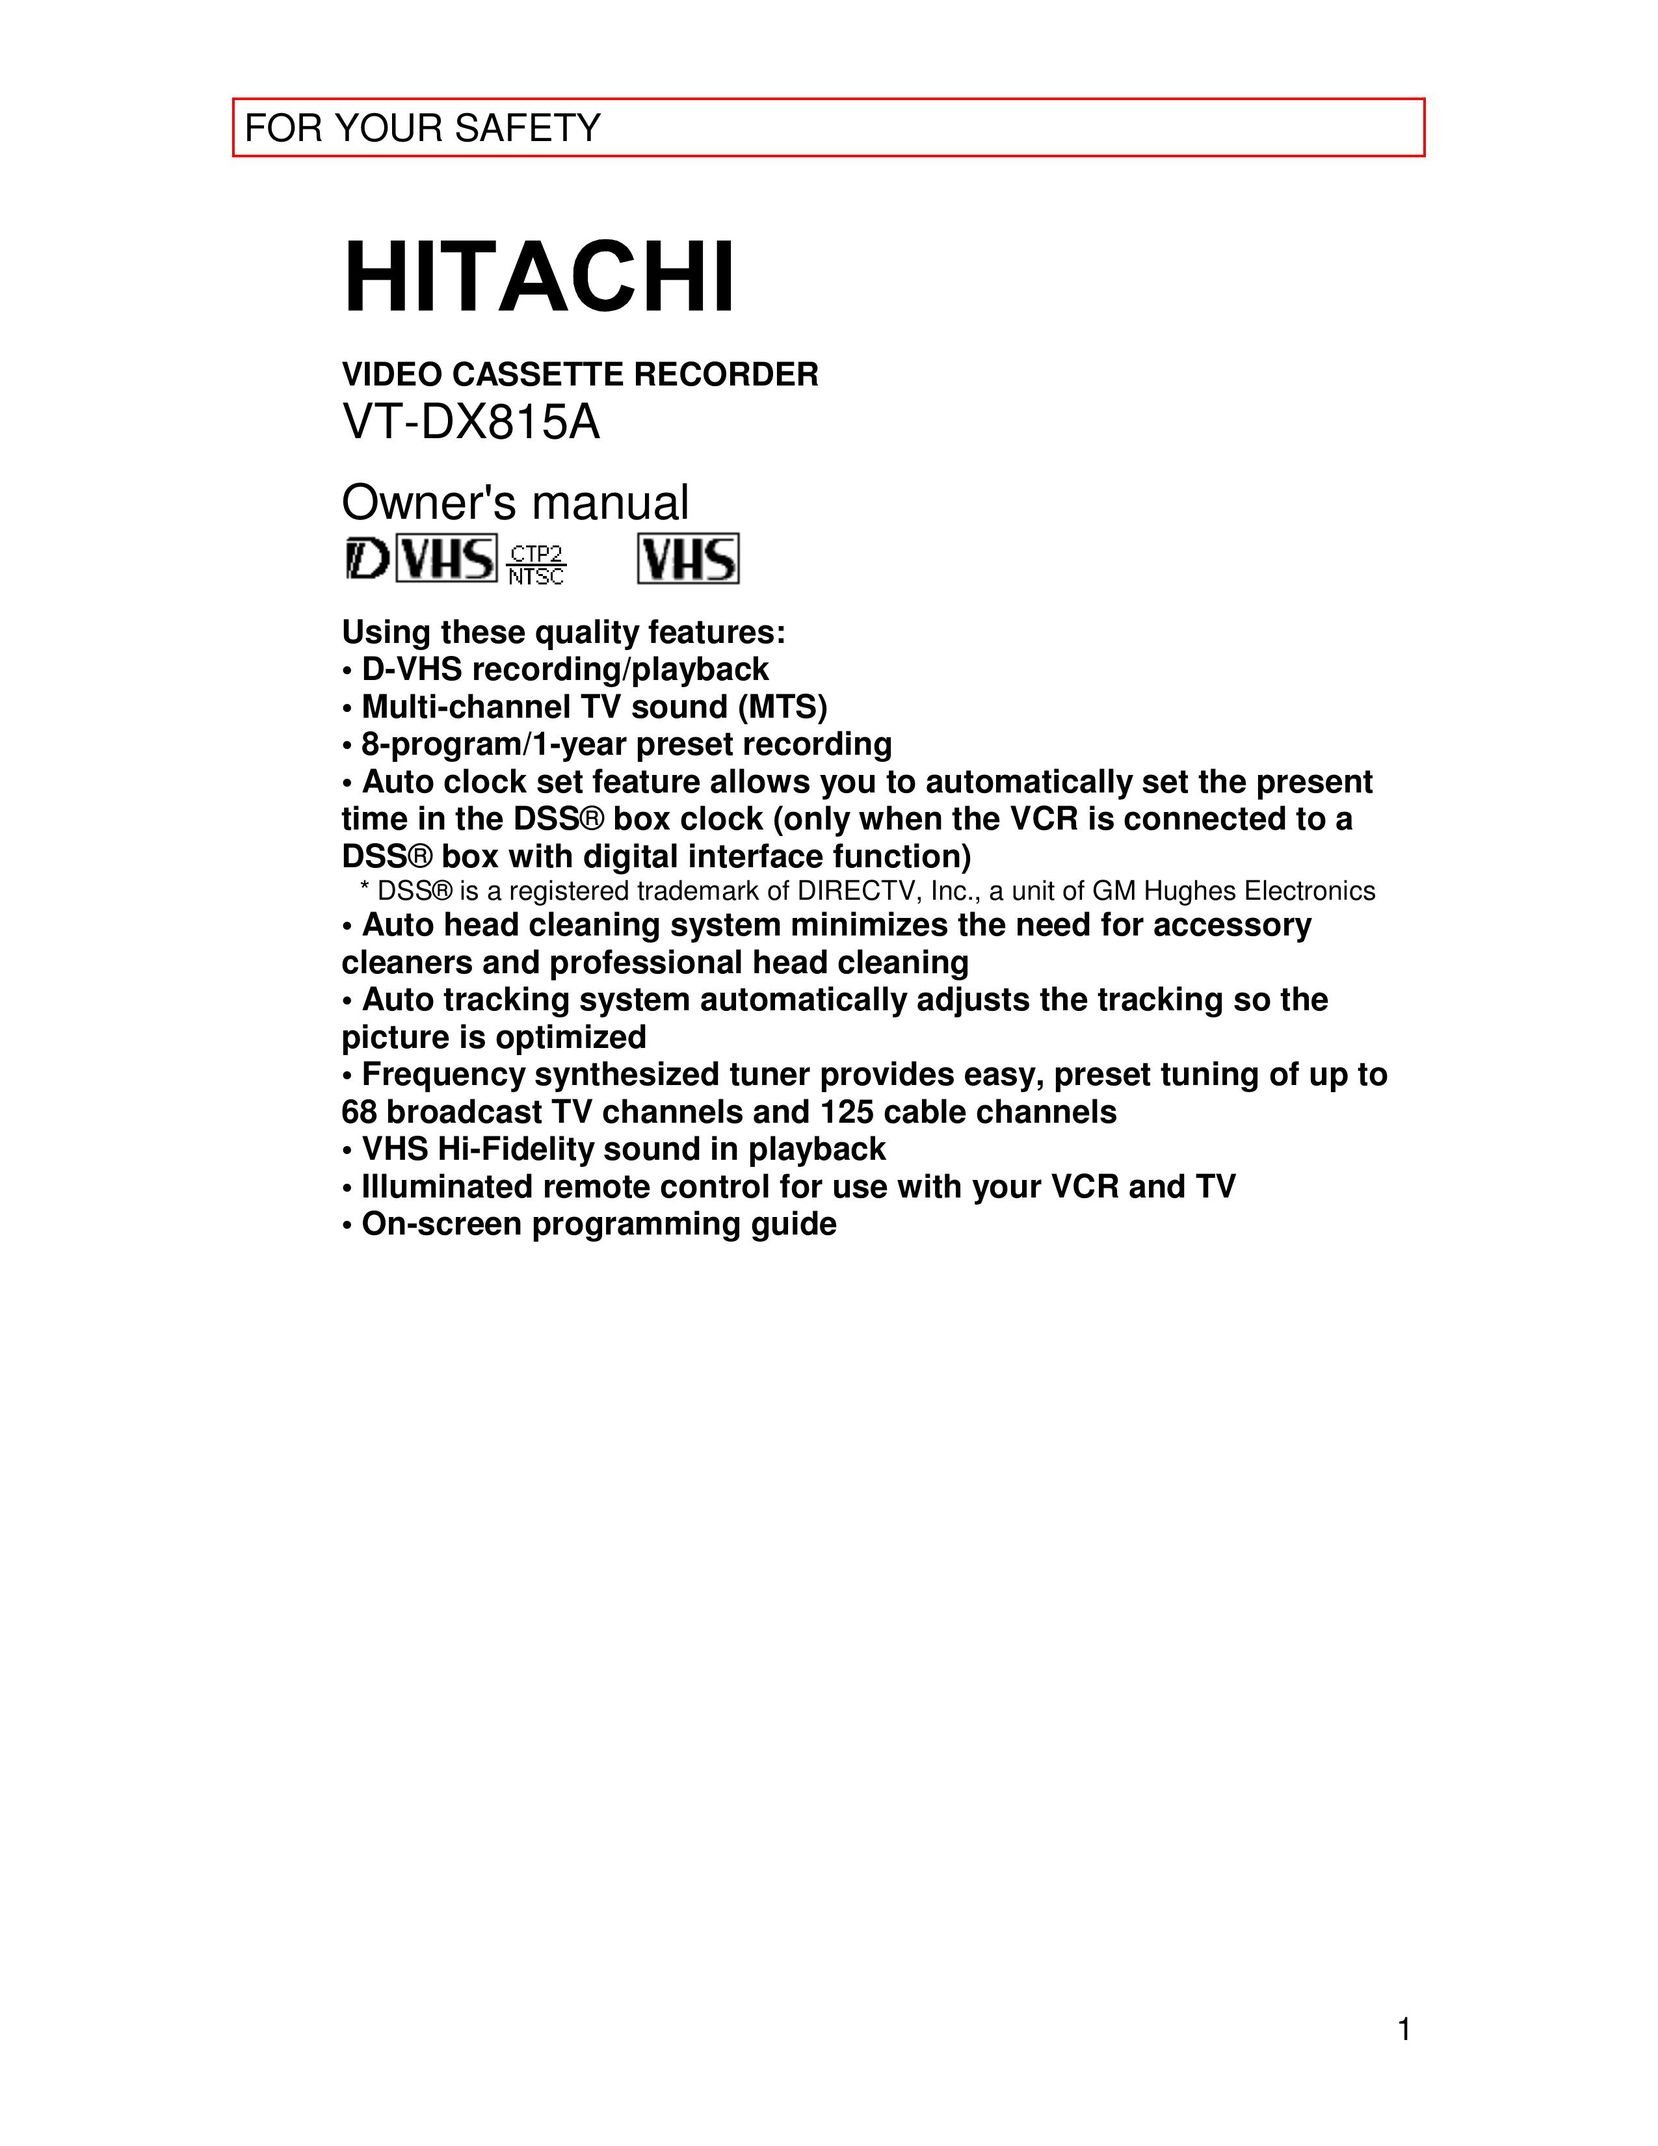 Hitachi VT-DX815A VCR User Manual